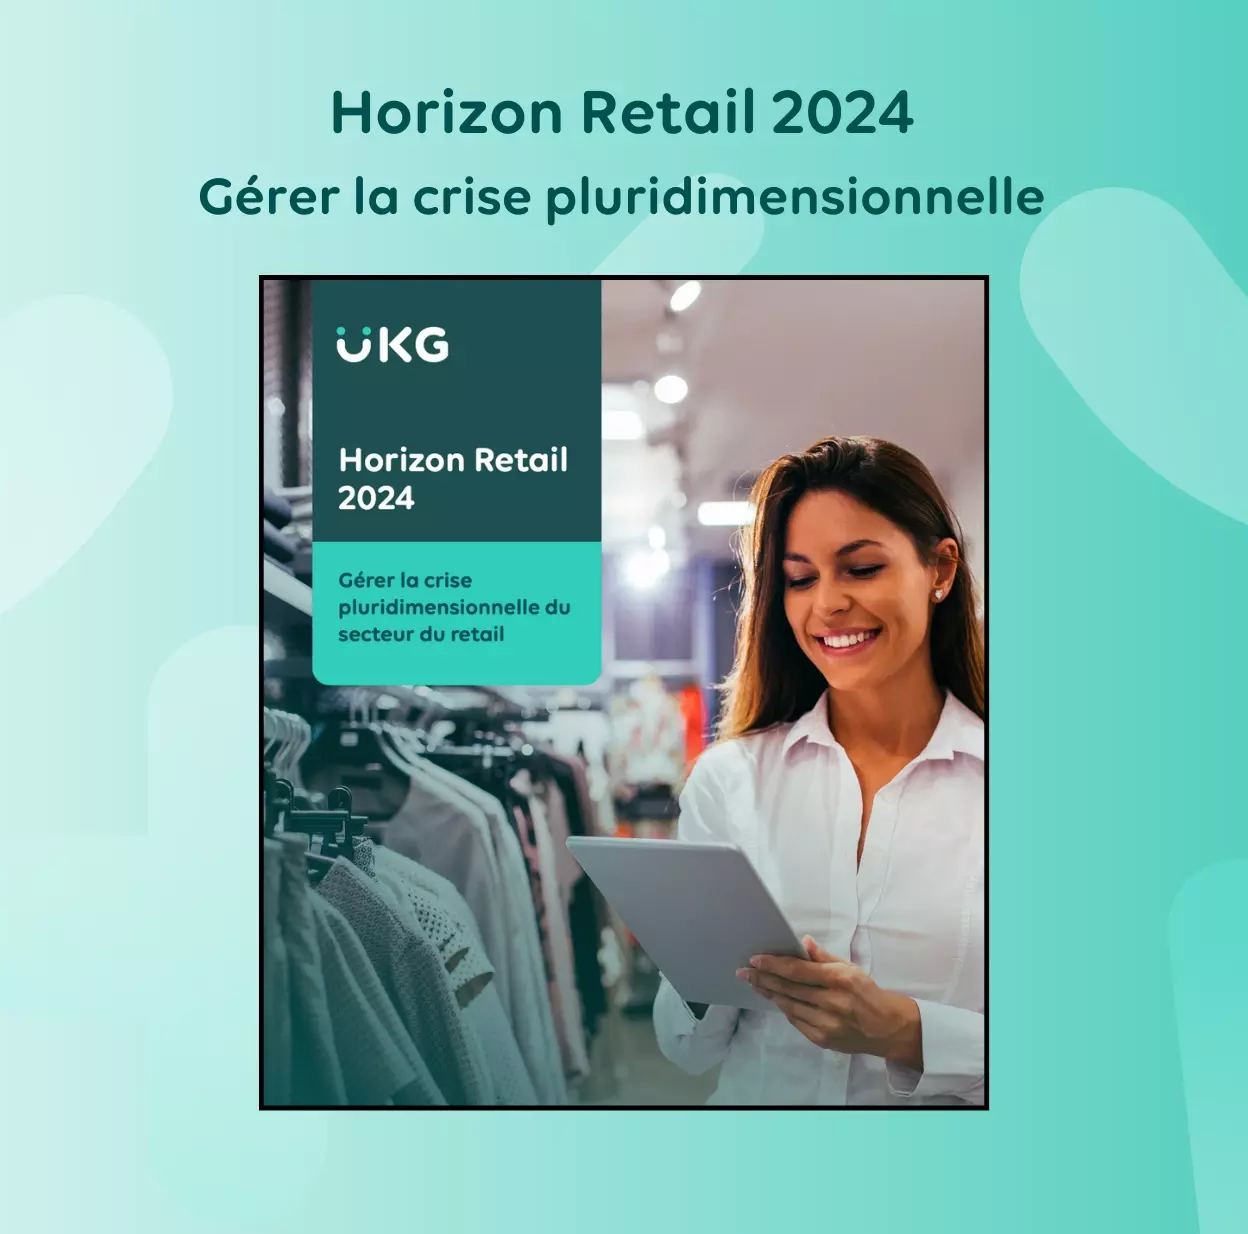 [Horizon Retail 2024] Gérer la crise pluridimensionnelle du secteur du retail